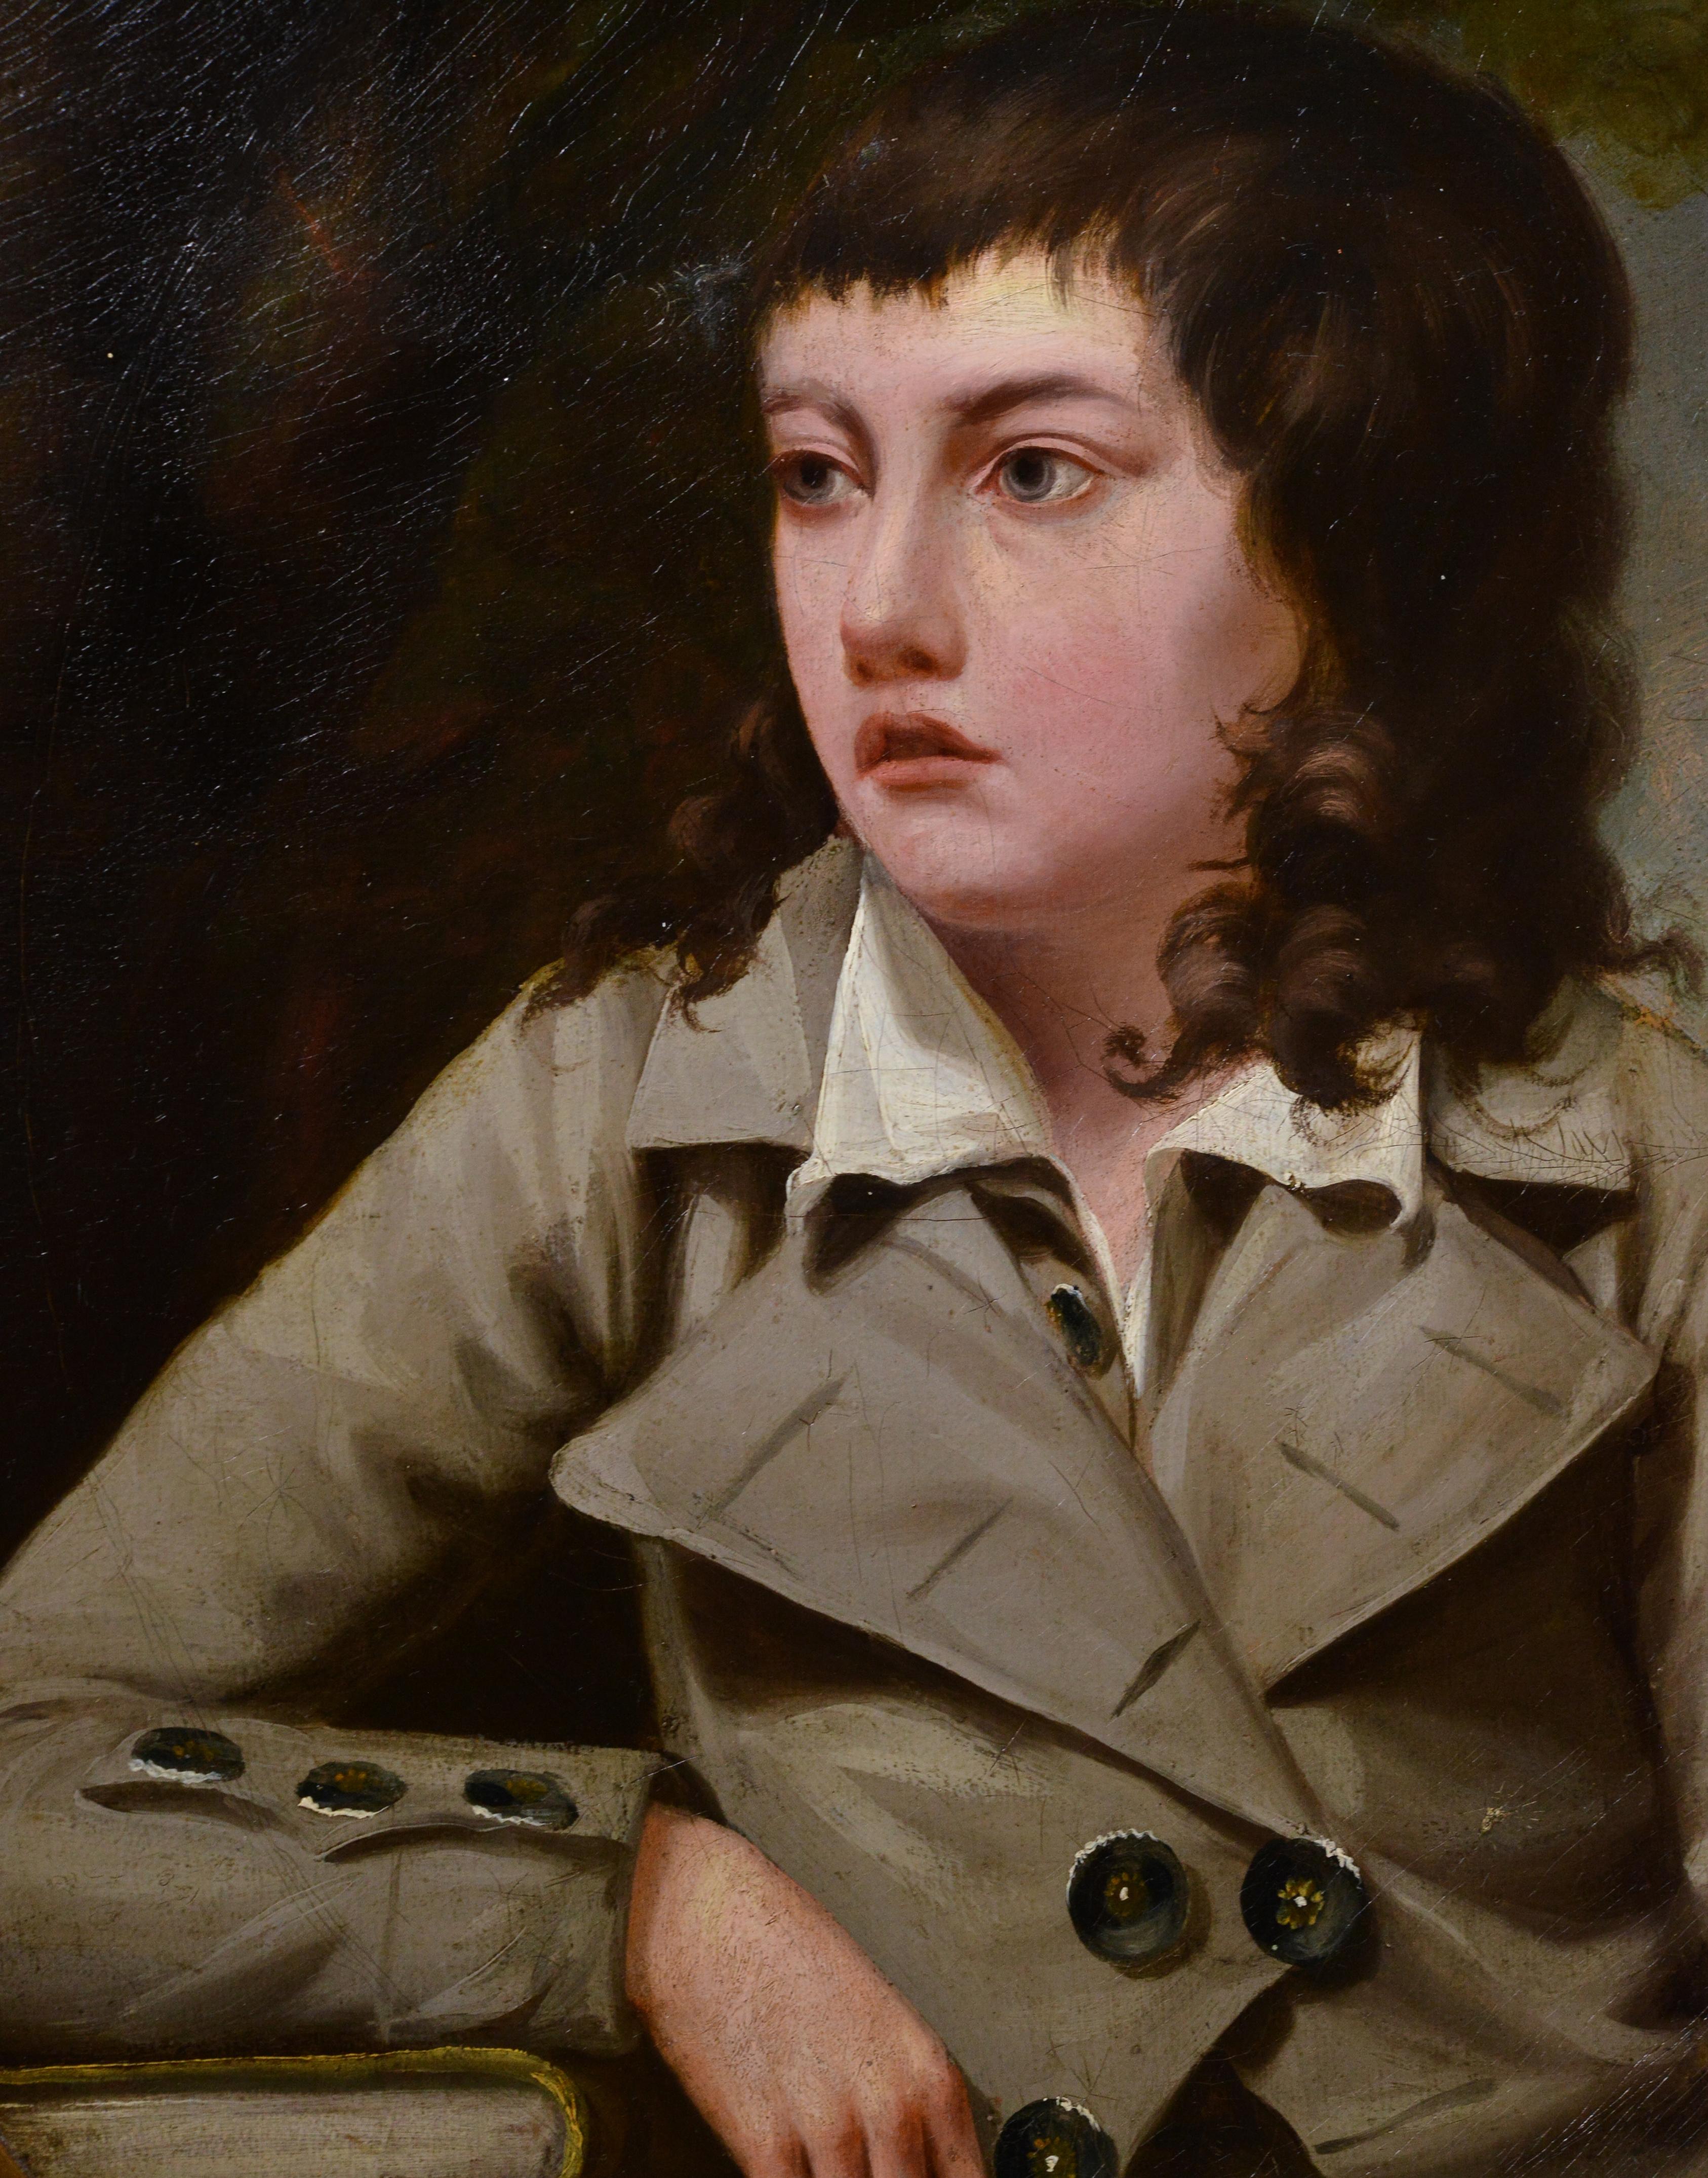 Portrait d'un garçon âgé de 12 à 14 ans peint à la fin du XVIIIe siècle, probablement par NO AGE John Opie, 1761 - 1807 (ou son studio, cercle), peintre d'histoire et de portraits anglais. Il a peint de nombreux grands hommes et femmes de son